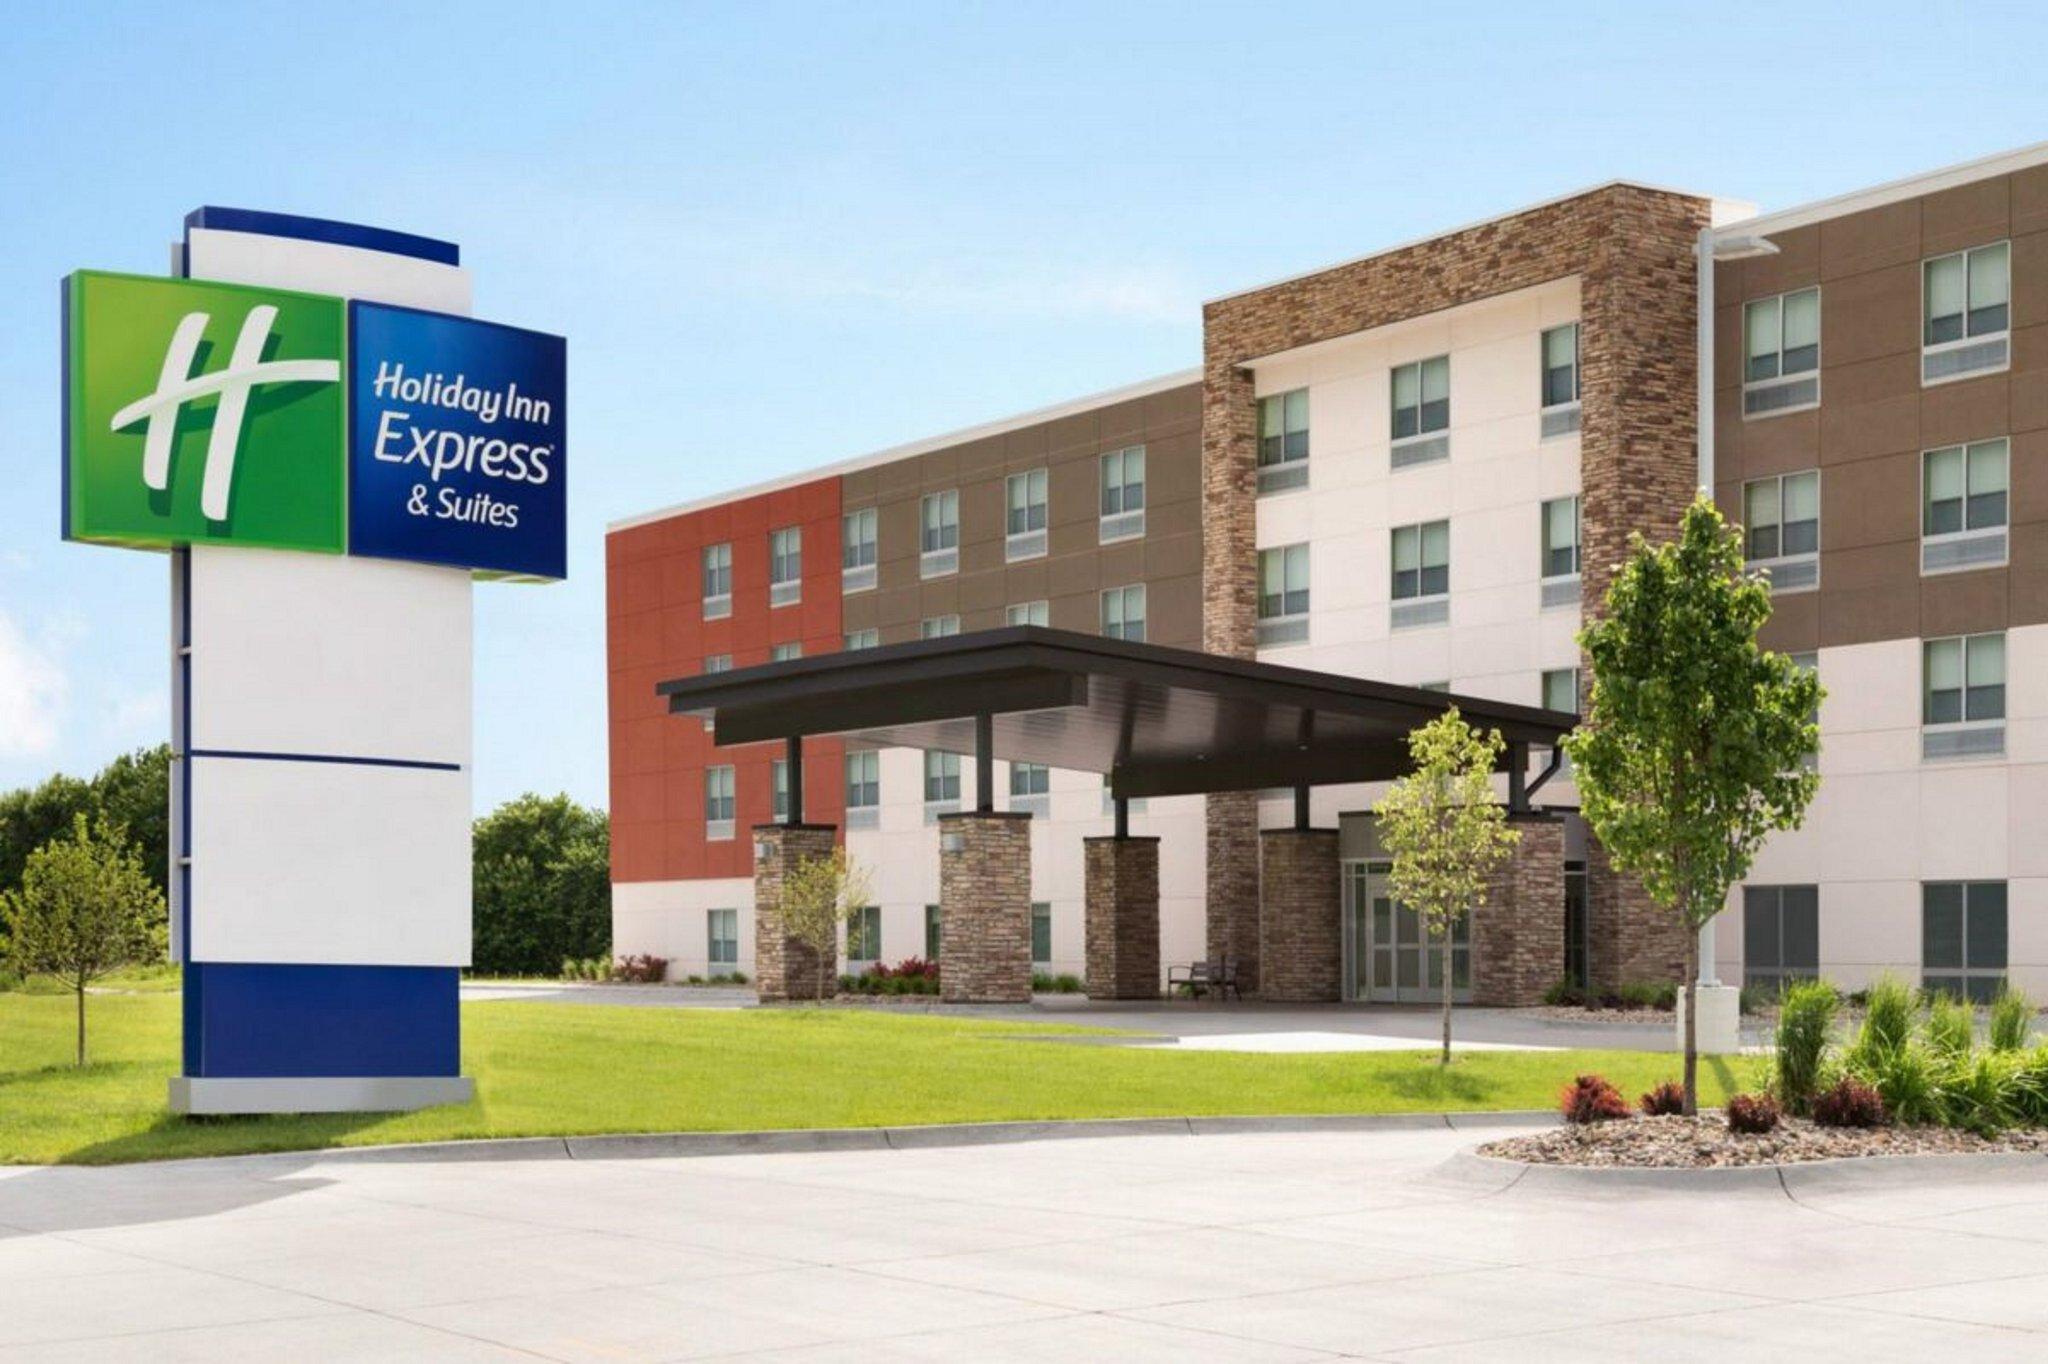 Holiday Inn Express White Marsh in White Marsh, MD